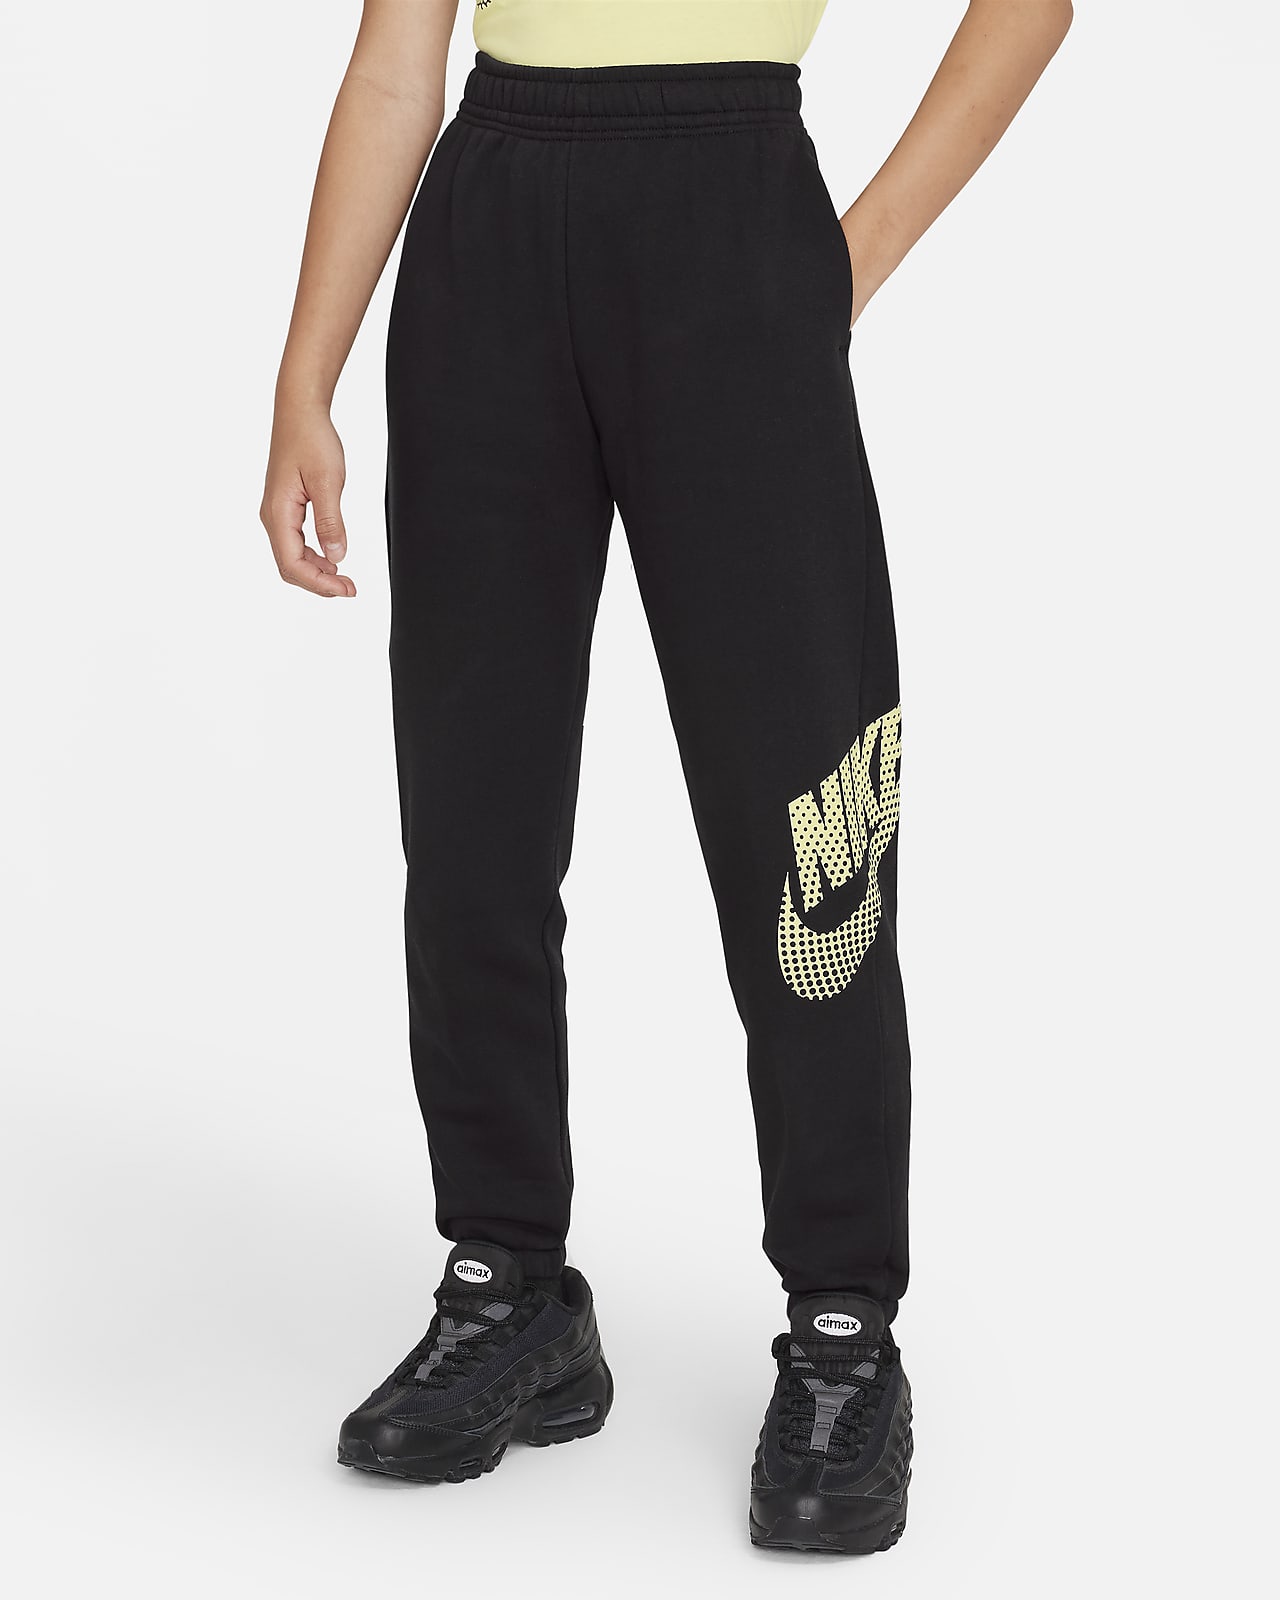 Nike Sportswear extragroße Fleece-Tanzhose für ältere Kinder (Mädchen)